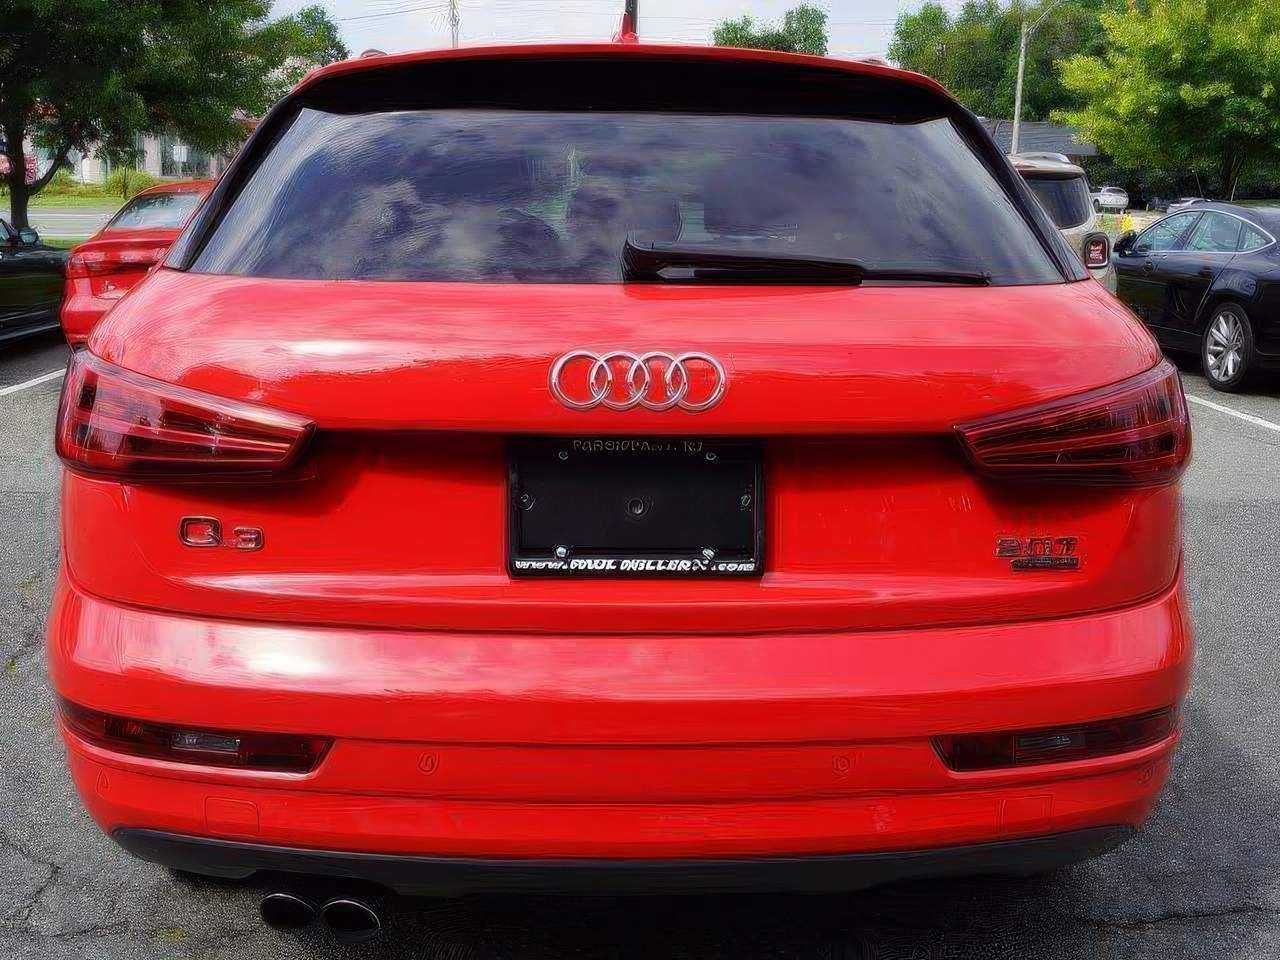 Audi Q3 2017 Premium Plus